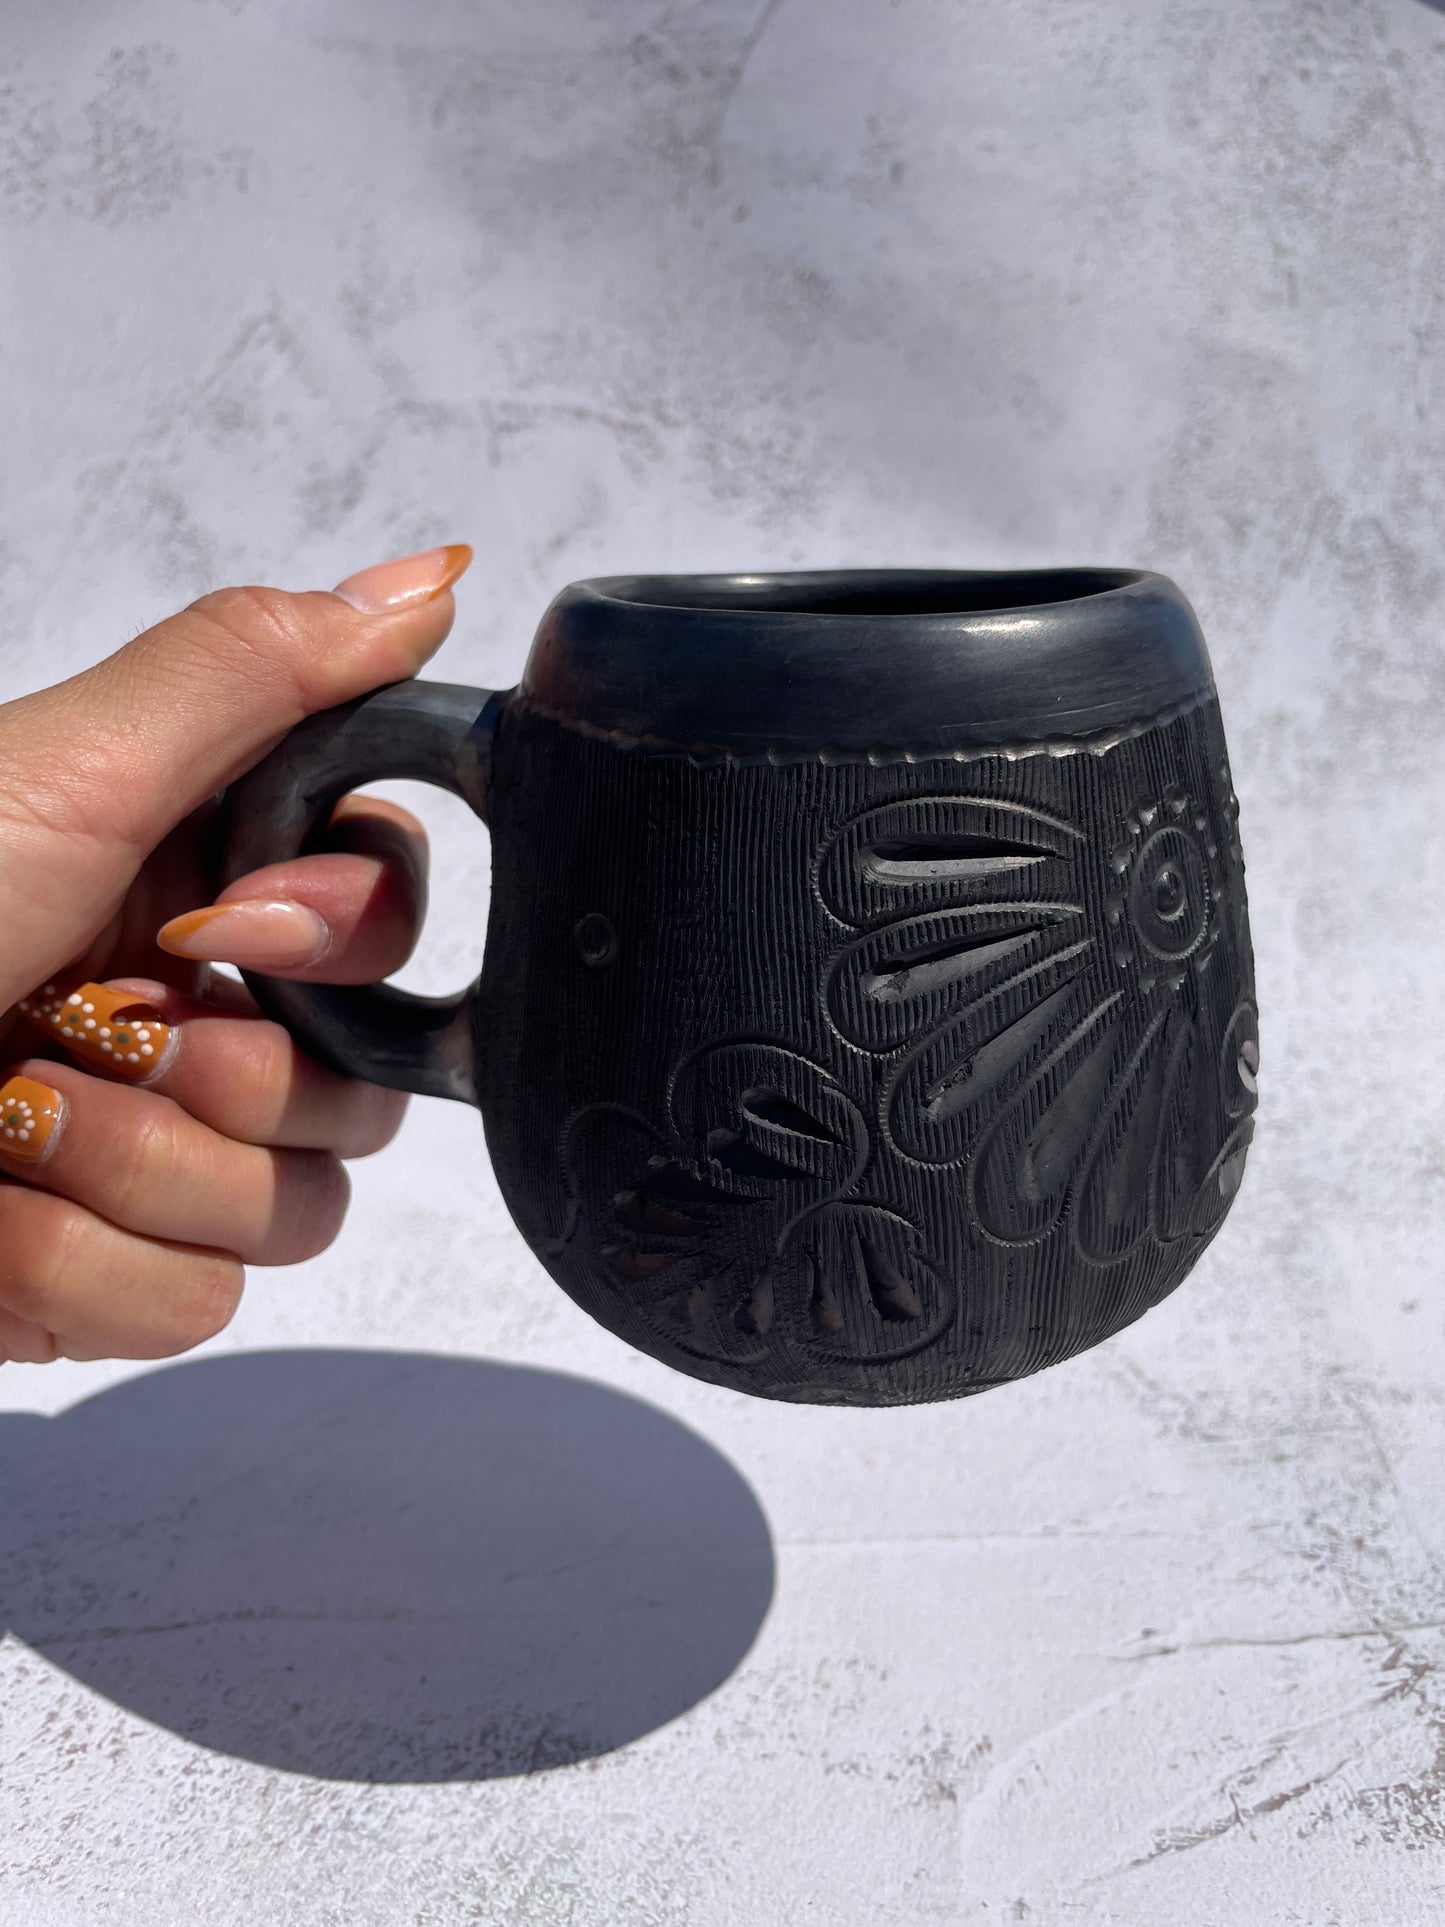 Oaxaca Black Pottery Mugs Taza Barro Negro